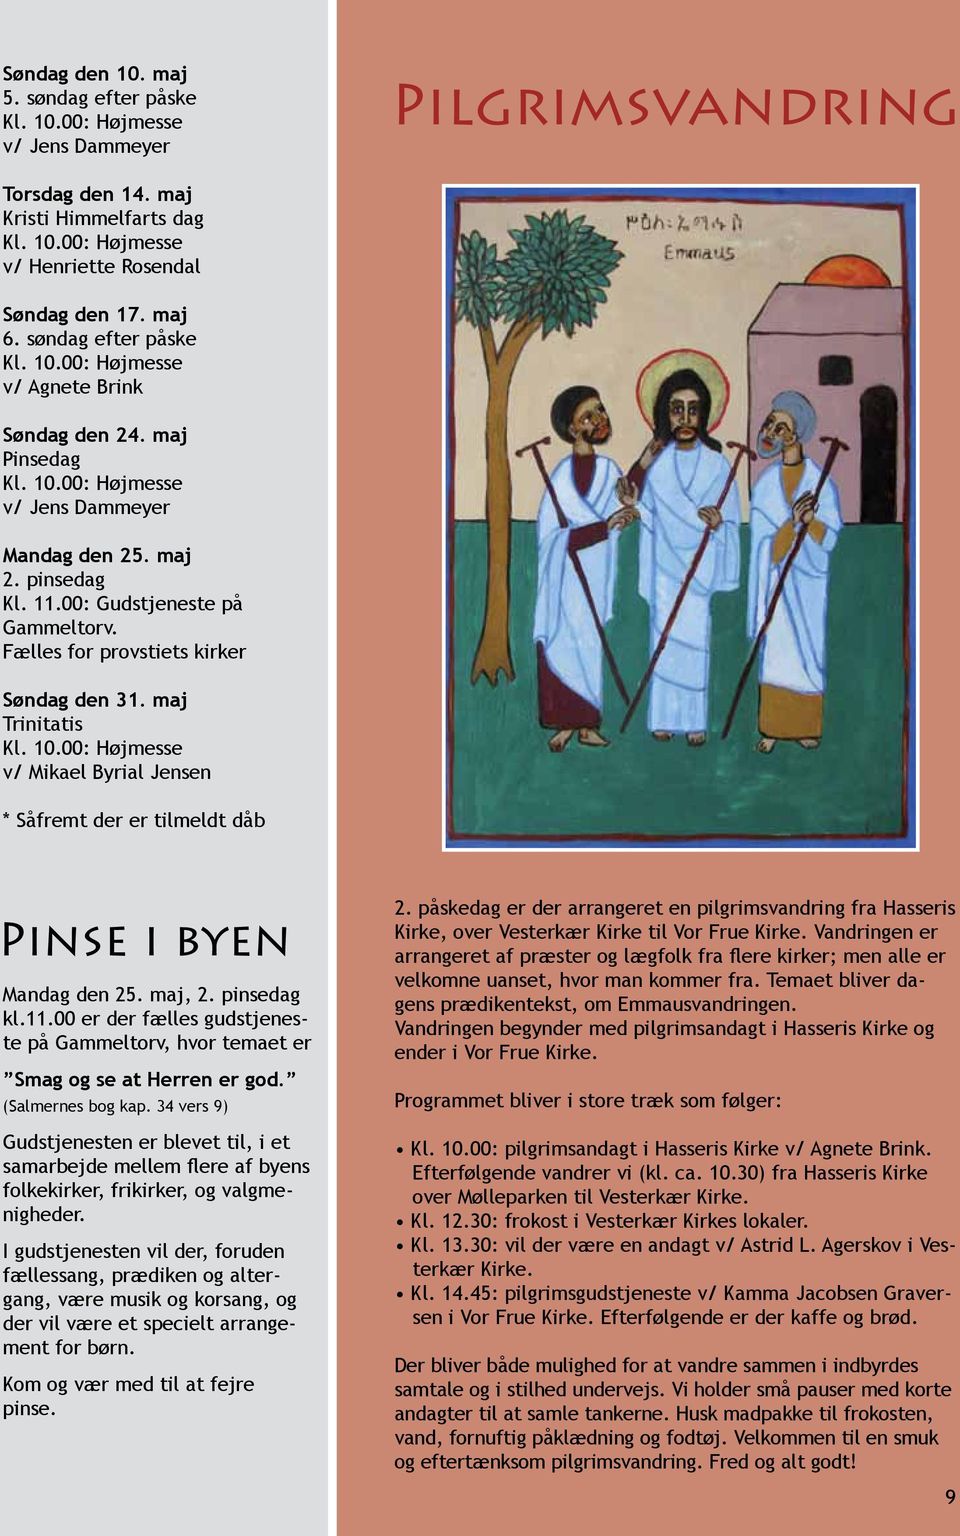 maj Trinitatis v/ Mikael Byrial Jensen * Såfremt der er tilmeldt dåb Pinse i byen Mandag den 25. maj, 2. pinsedag kl.11.